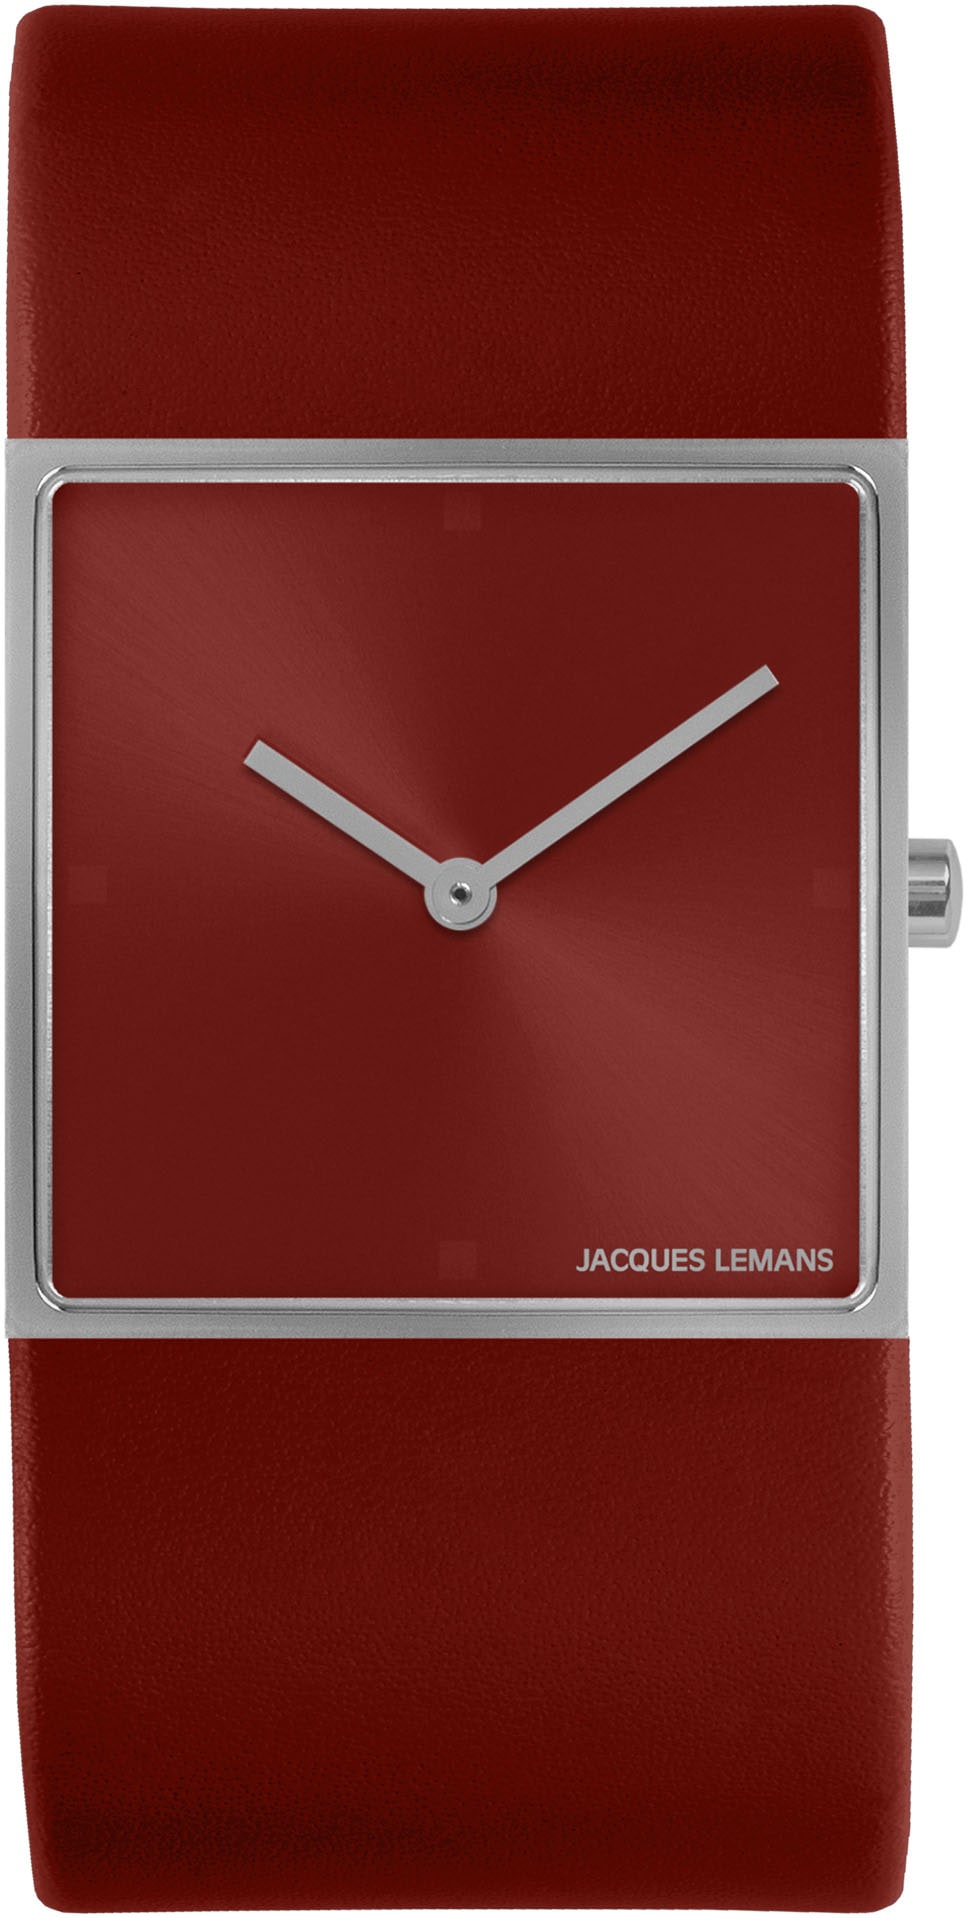 Jacques Lemans Quarzuhr »Design Collection«, Armbanduhr, Damenuhr, gehärtetes Crystexglas